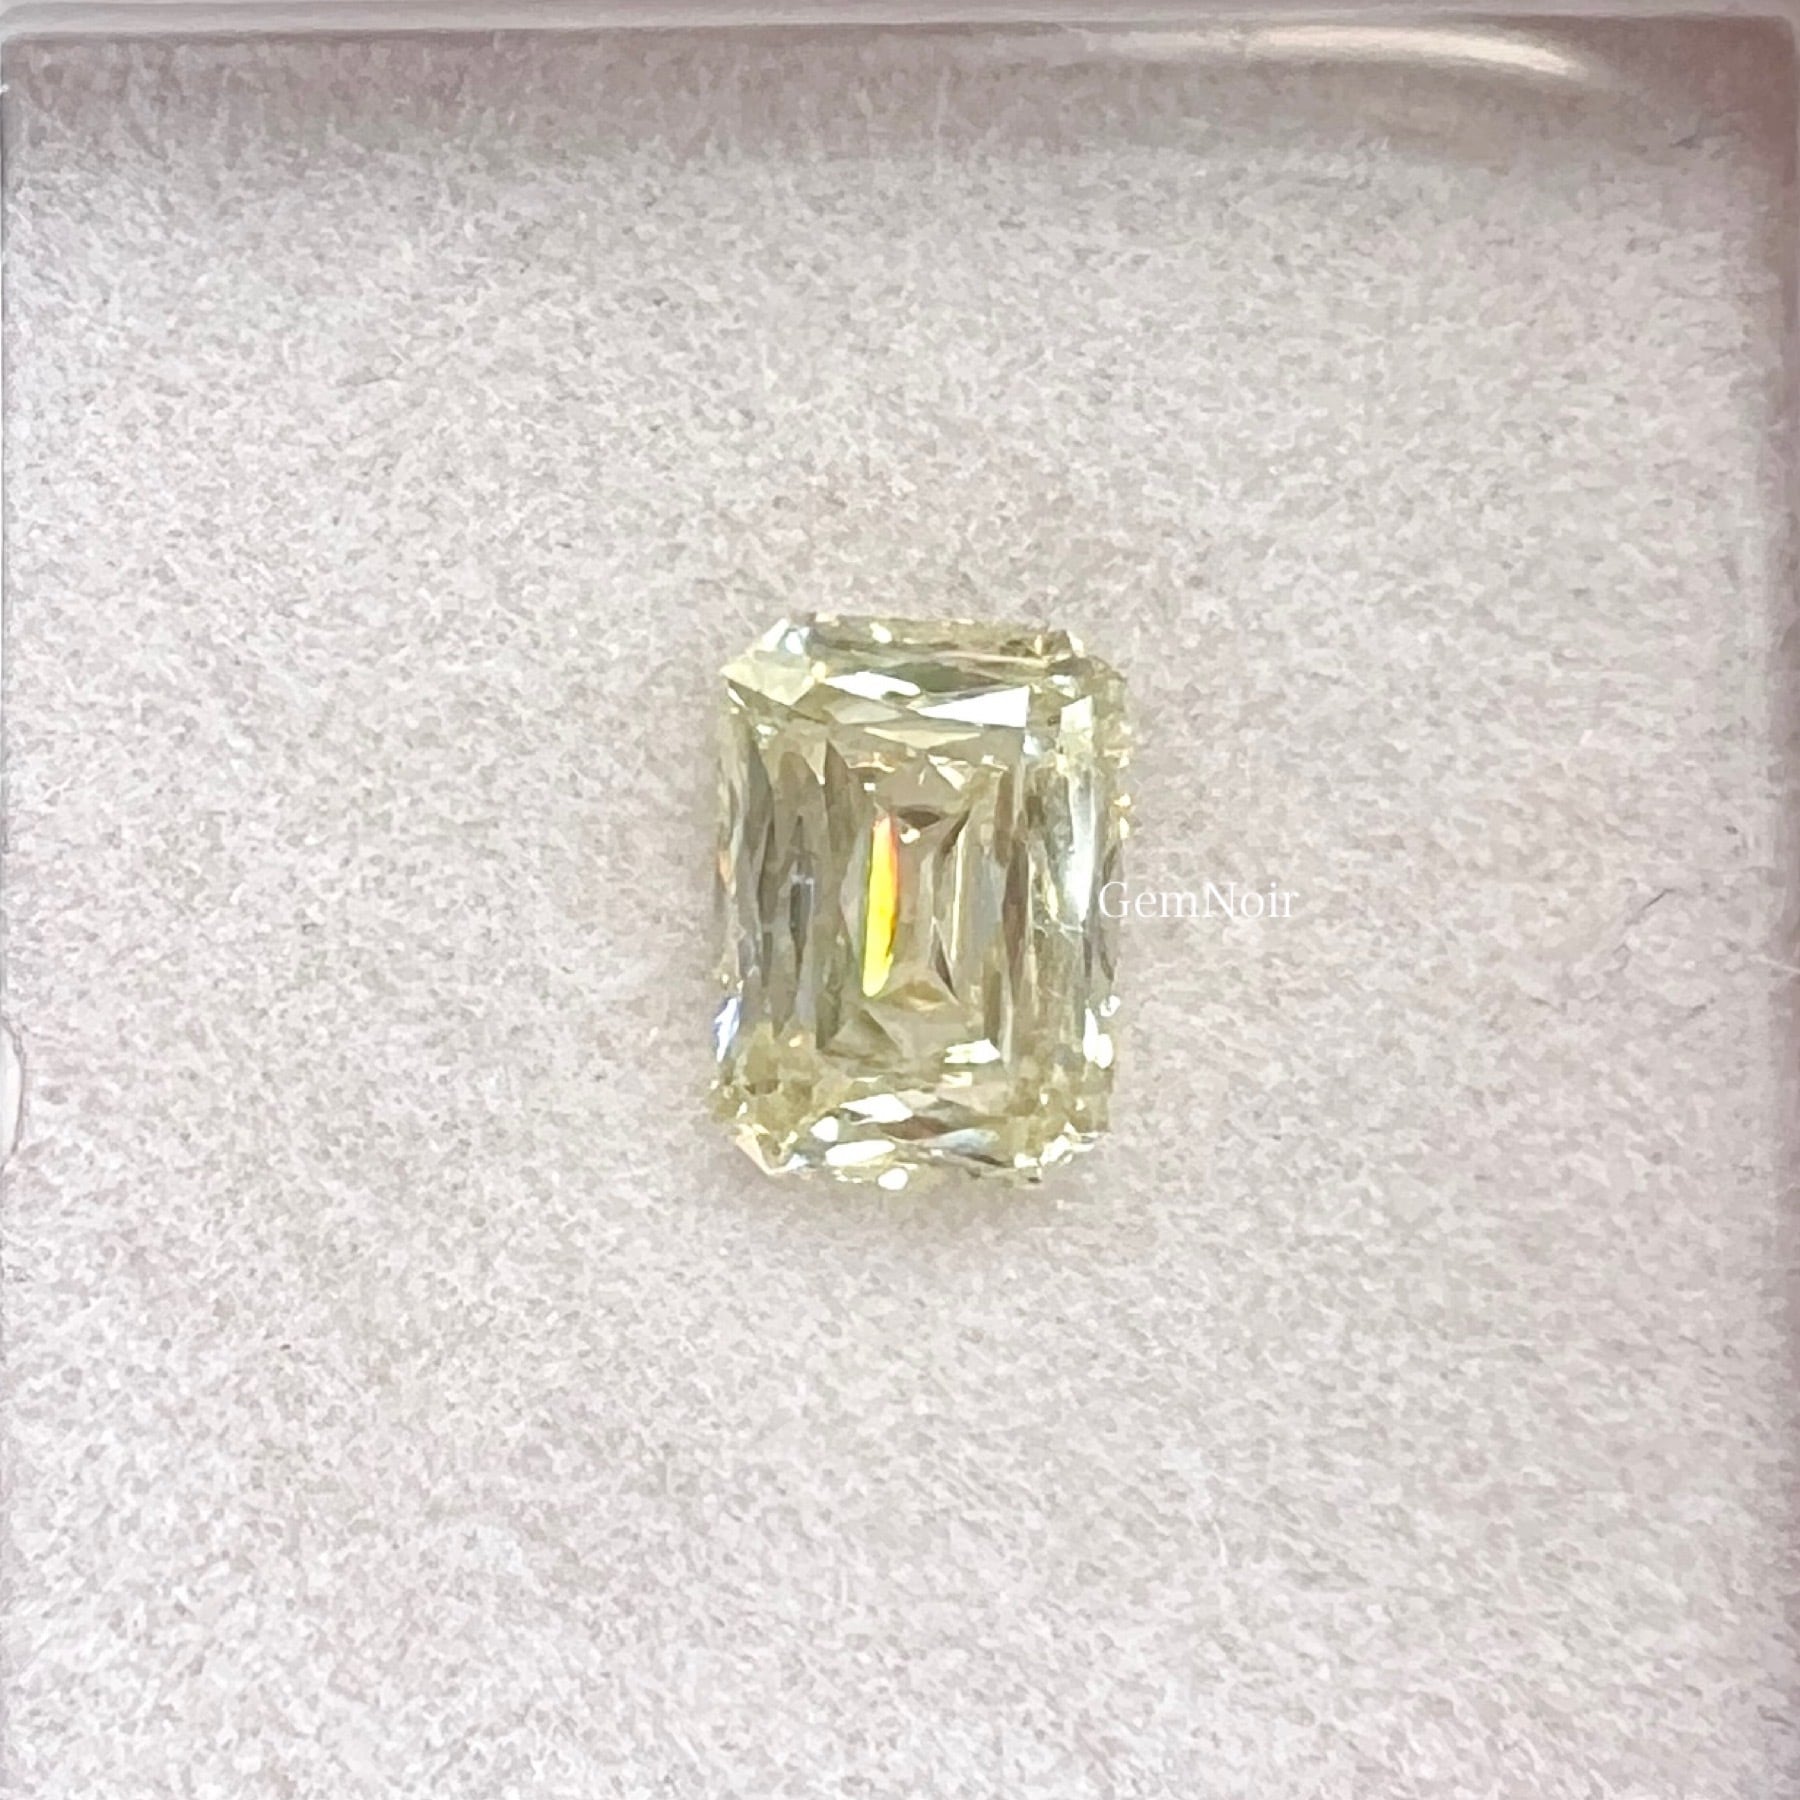 【溢れる透明感と輝き】ライトイエロー モアッサナイト 特殊シザーズカット ルース ダイヤモンドがお好きな方にも。